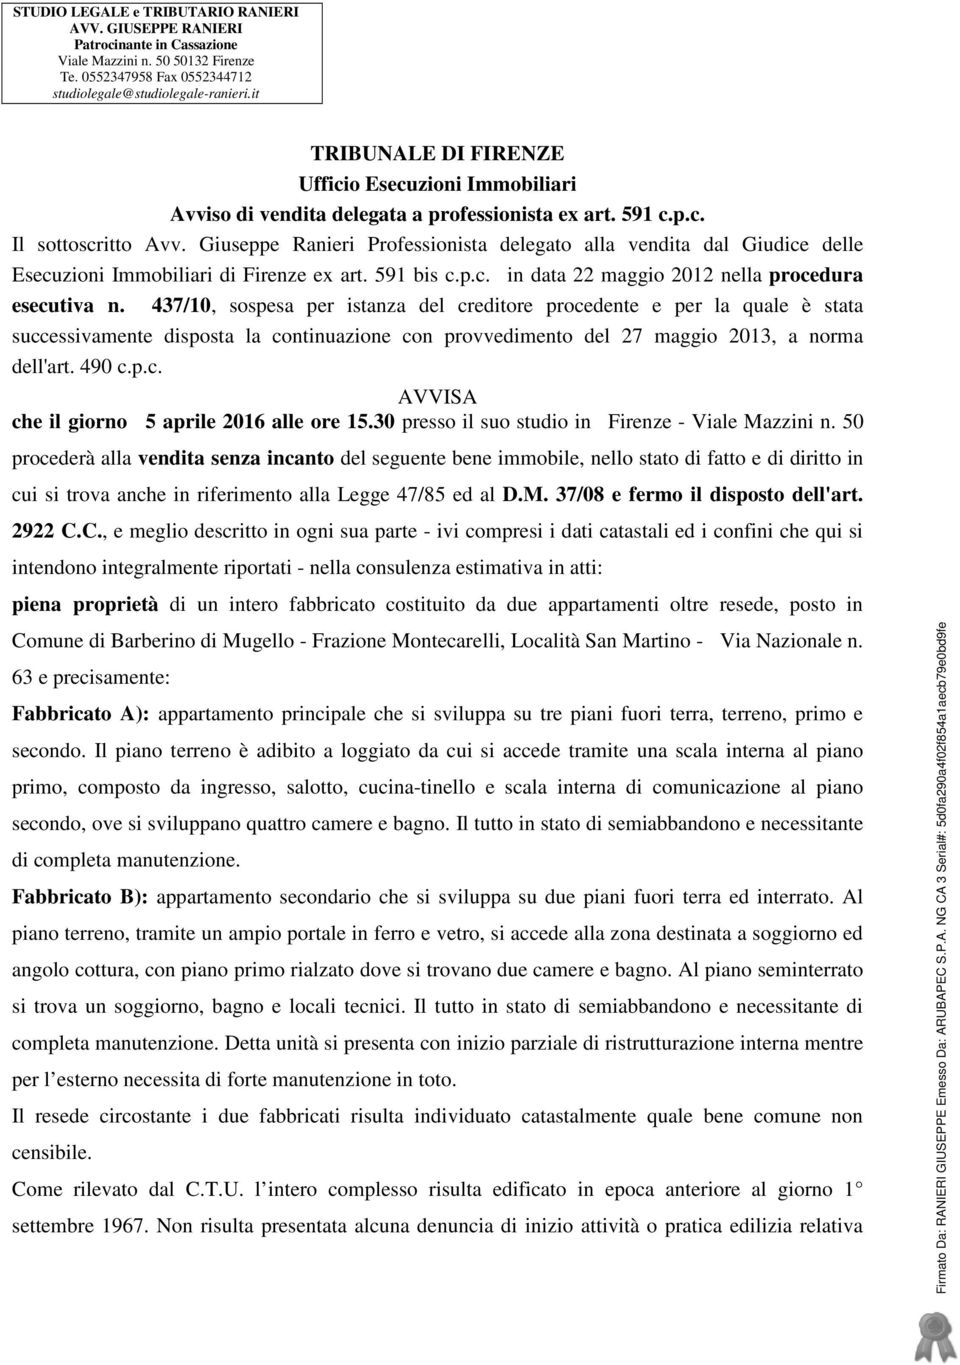 Giuseppe Ranieri Professionista delegato alla vendita dal Giudice delle Esecuzioni Immobiliari di Firenze ex art. 591 bis c.p.c. in data 22 maggio 2012 nella procedura esecutiva n.